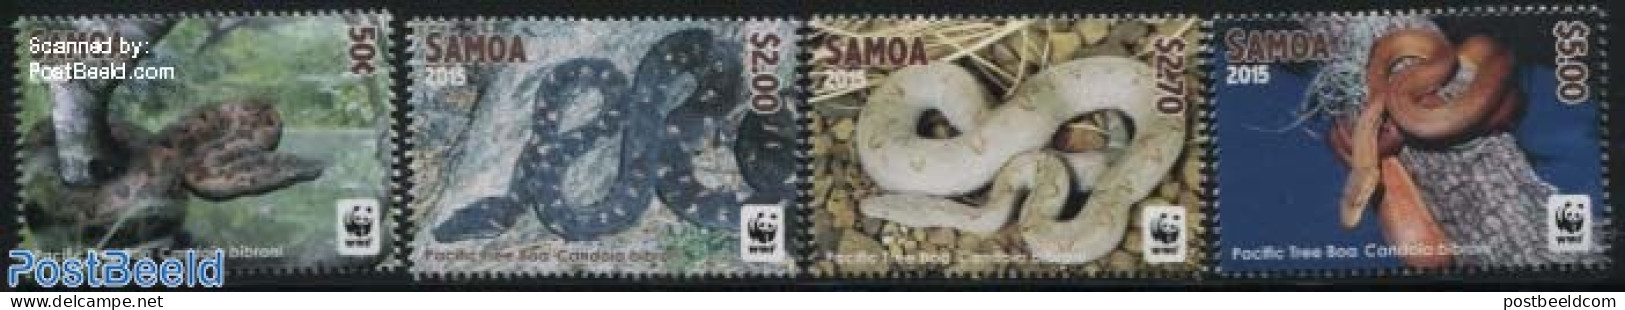 Samoa 2015 WWF, Pacific Tree Boa 4v (no Borders), Mint NH, Nature - Reptiles - Snakes - World Wildlife Fund (WWF) - Samoa